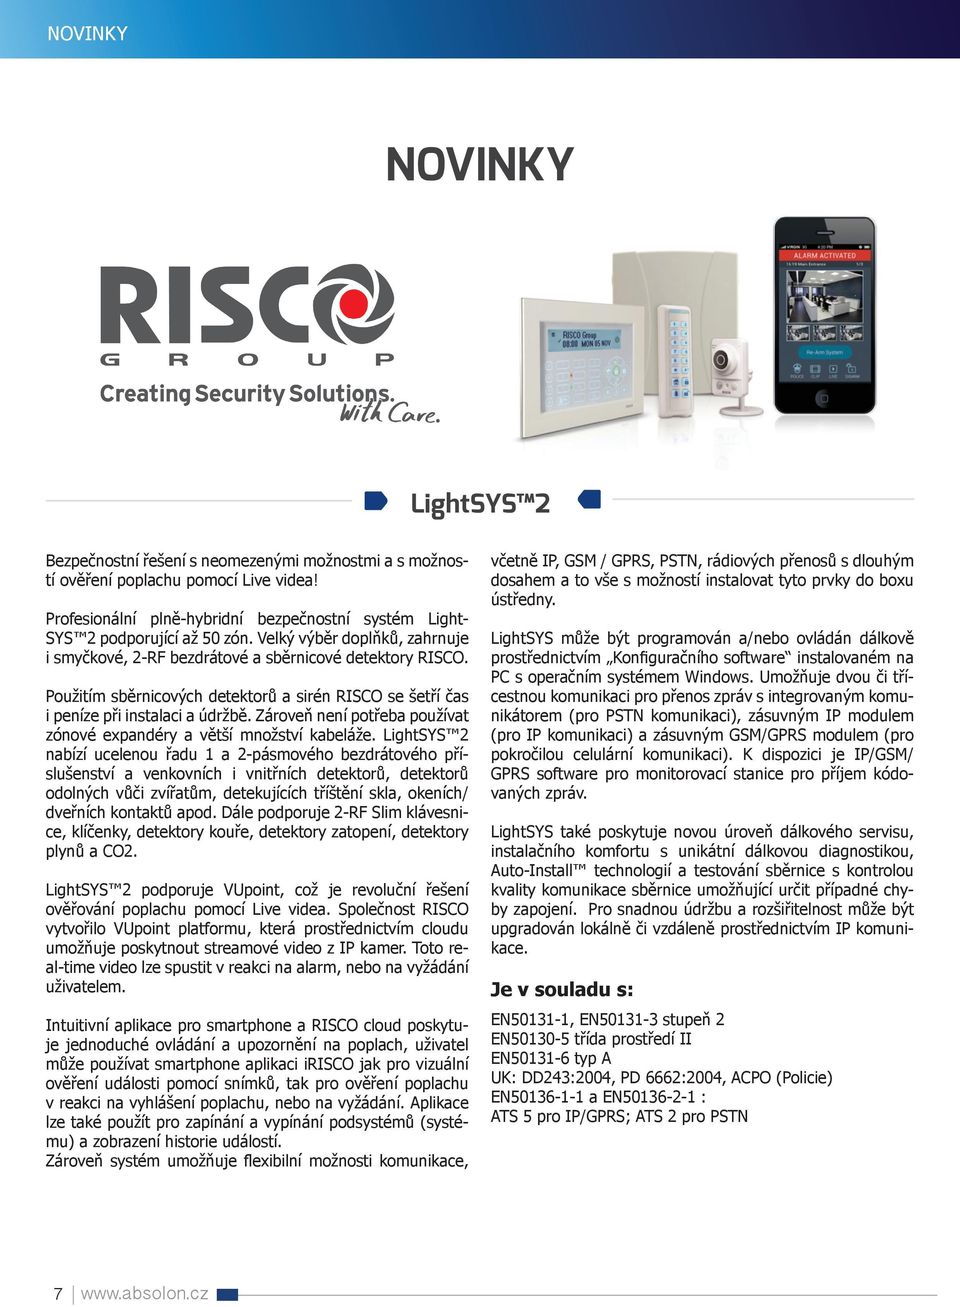 Použitím sběrnicových detektorů a sirén RISCO se šetří čas i peníze při instalaci a údržbě. Zároveň není potřeba používat zónové expandéry a větší množství kabeláže.